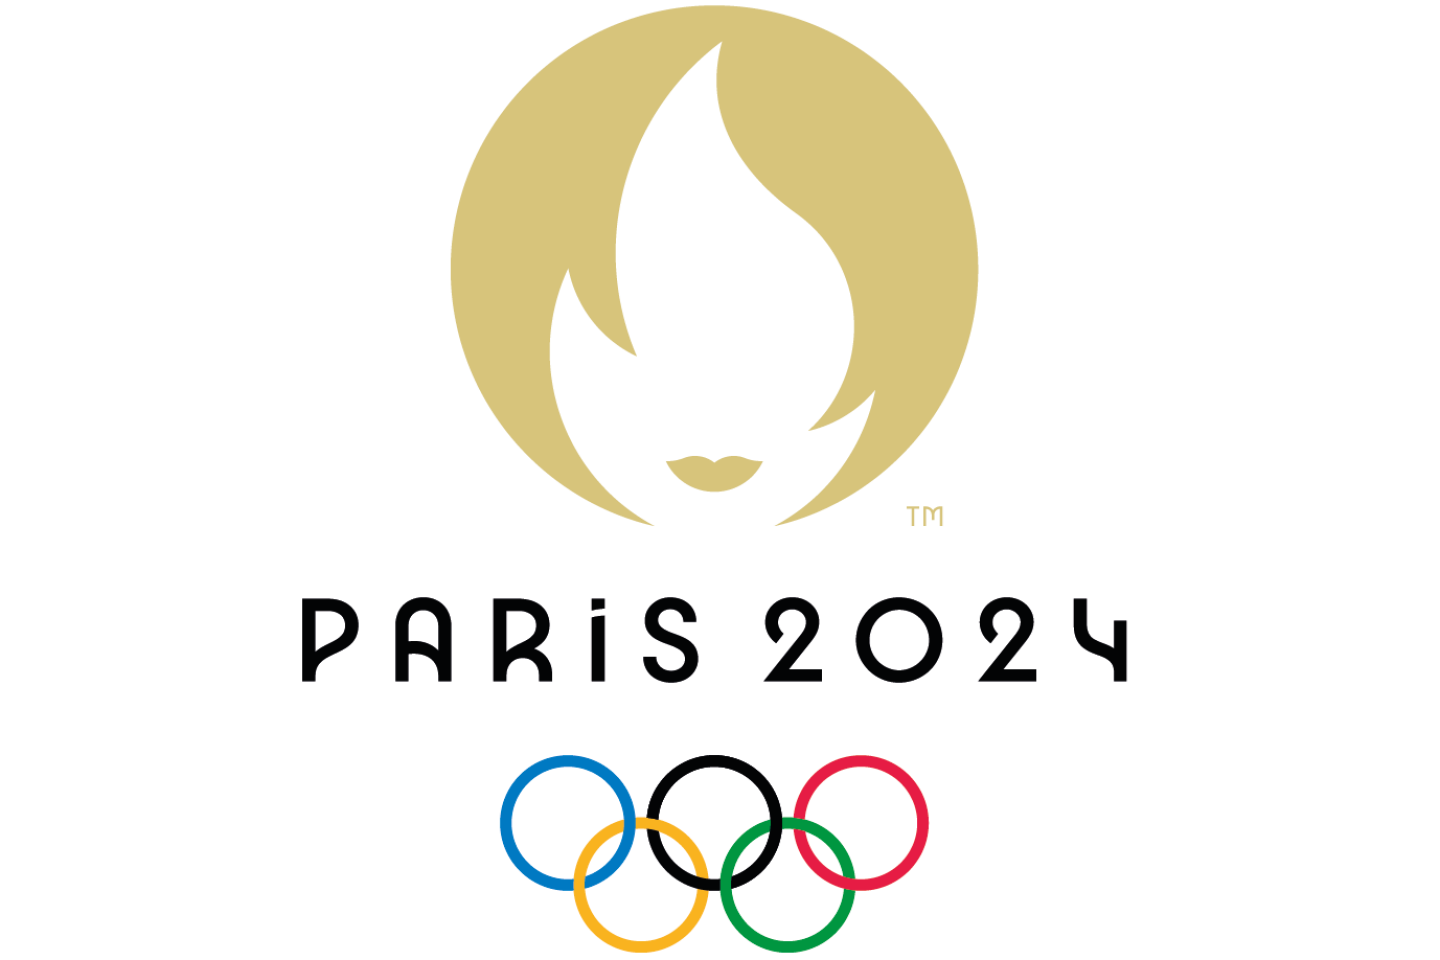 Paris 2024 le logo des Jeux olympiques dévoilé